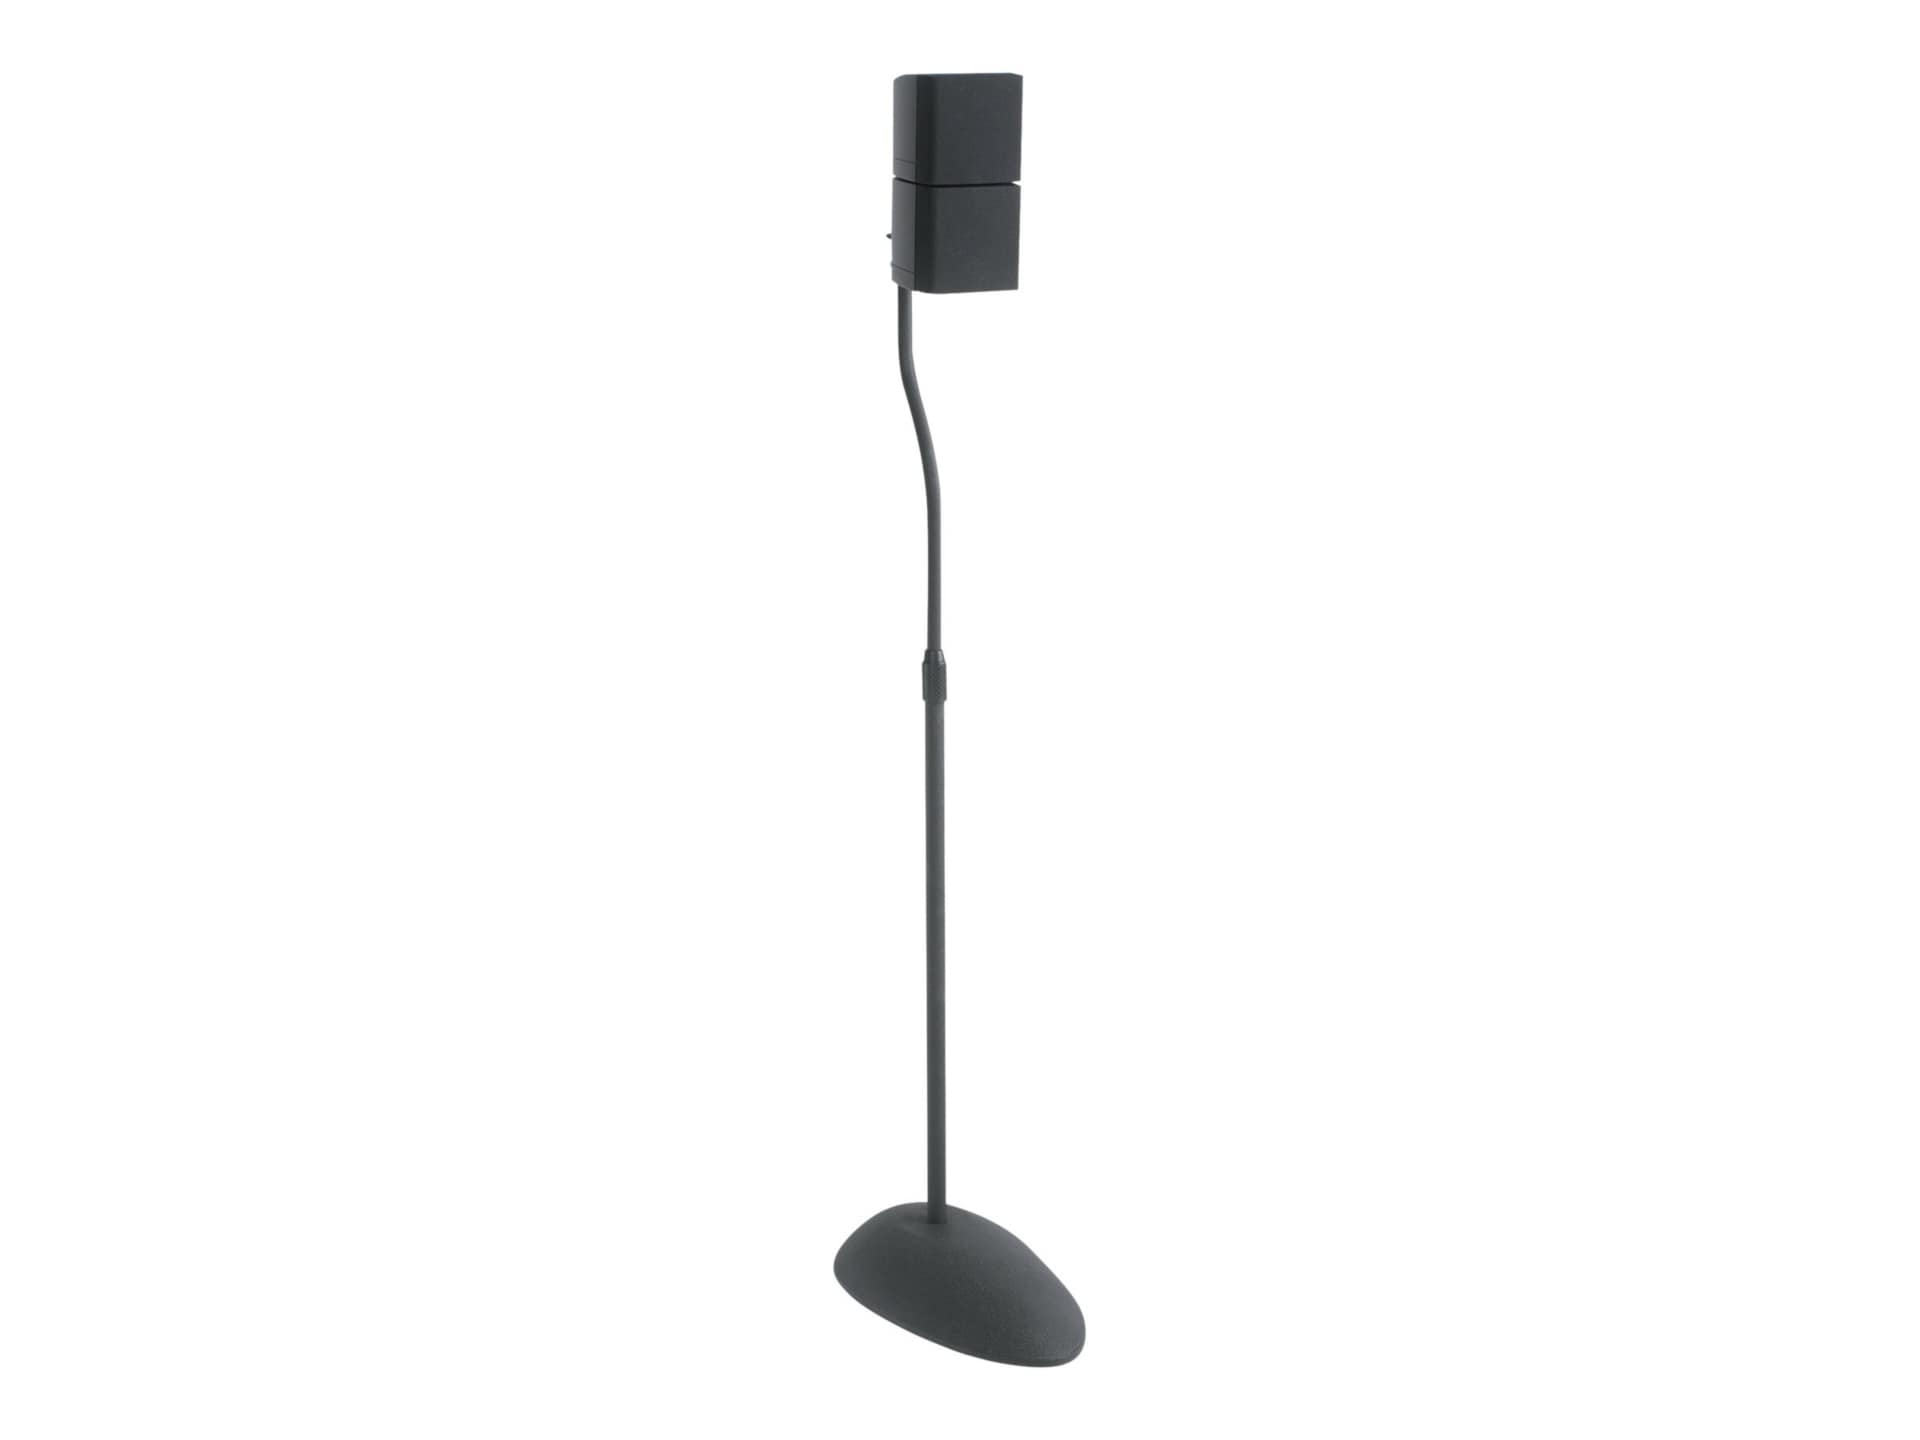 Sanus Home Theater Adjustable Speaker Stand - Height Adjustable 26-39" - Black